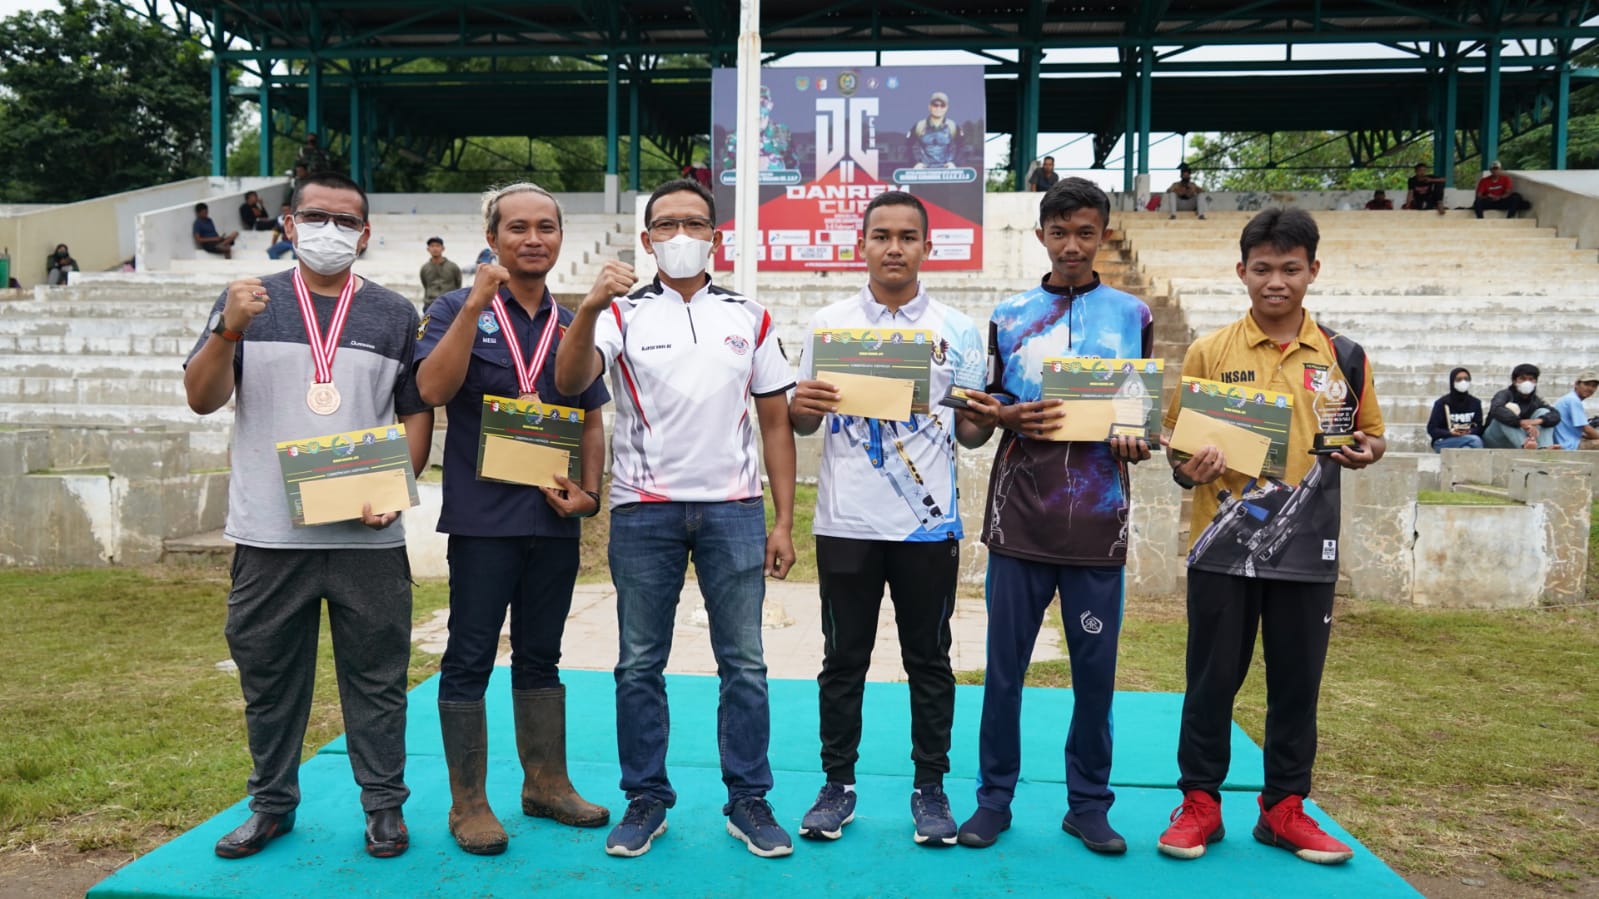 Piala Danrem Cup ke 2 Munculkan Atlit-atlit Muda Berbakat dari Kota Cirebon